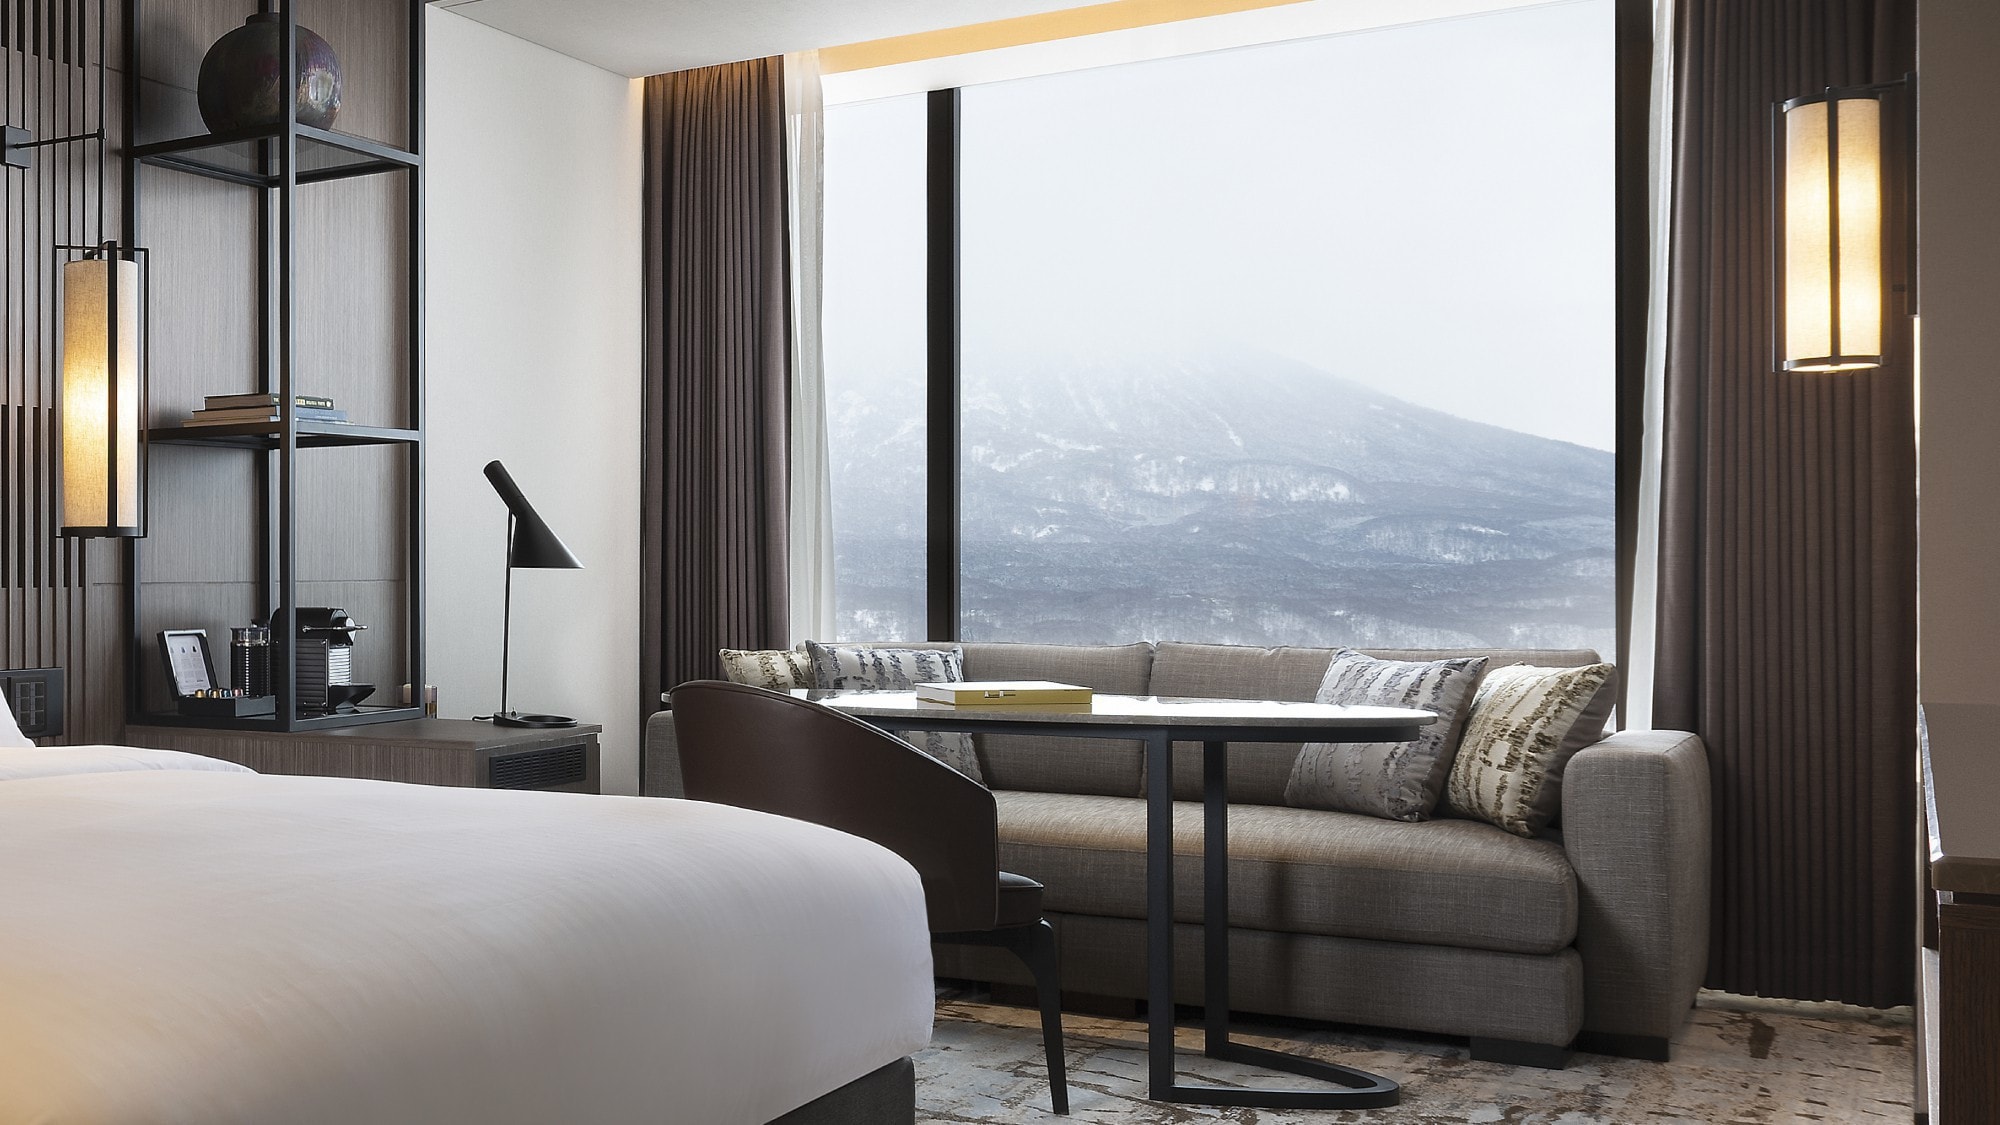 ◆니세코 빌리지 스키 리조트 직결, 요테야마와 니세코 안누푸리의 웅대한 자연에 안겨진 리조트 호텔